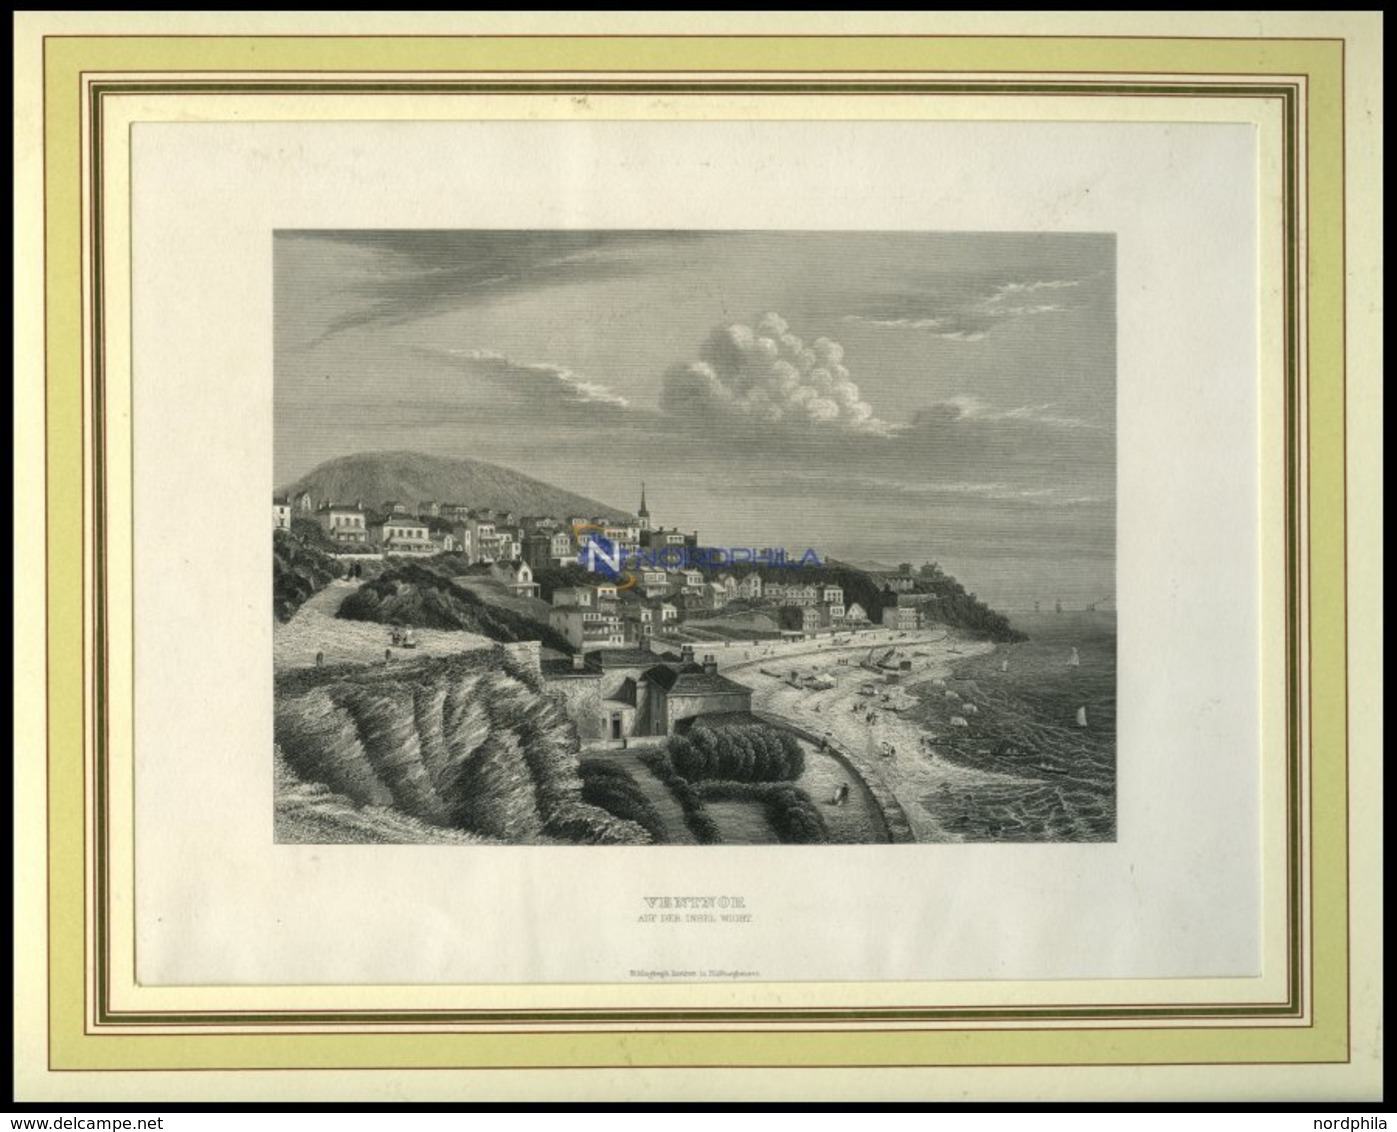 VENTNOR Auf Der Insel Wight, Gesamtansicht, Stahlstich Von B.I. Um 1860 - Lithographien